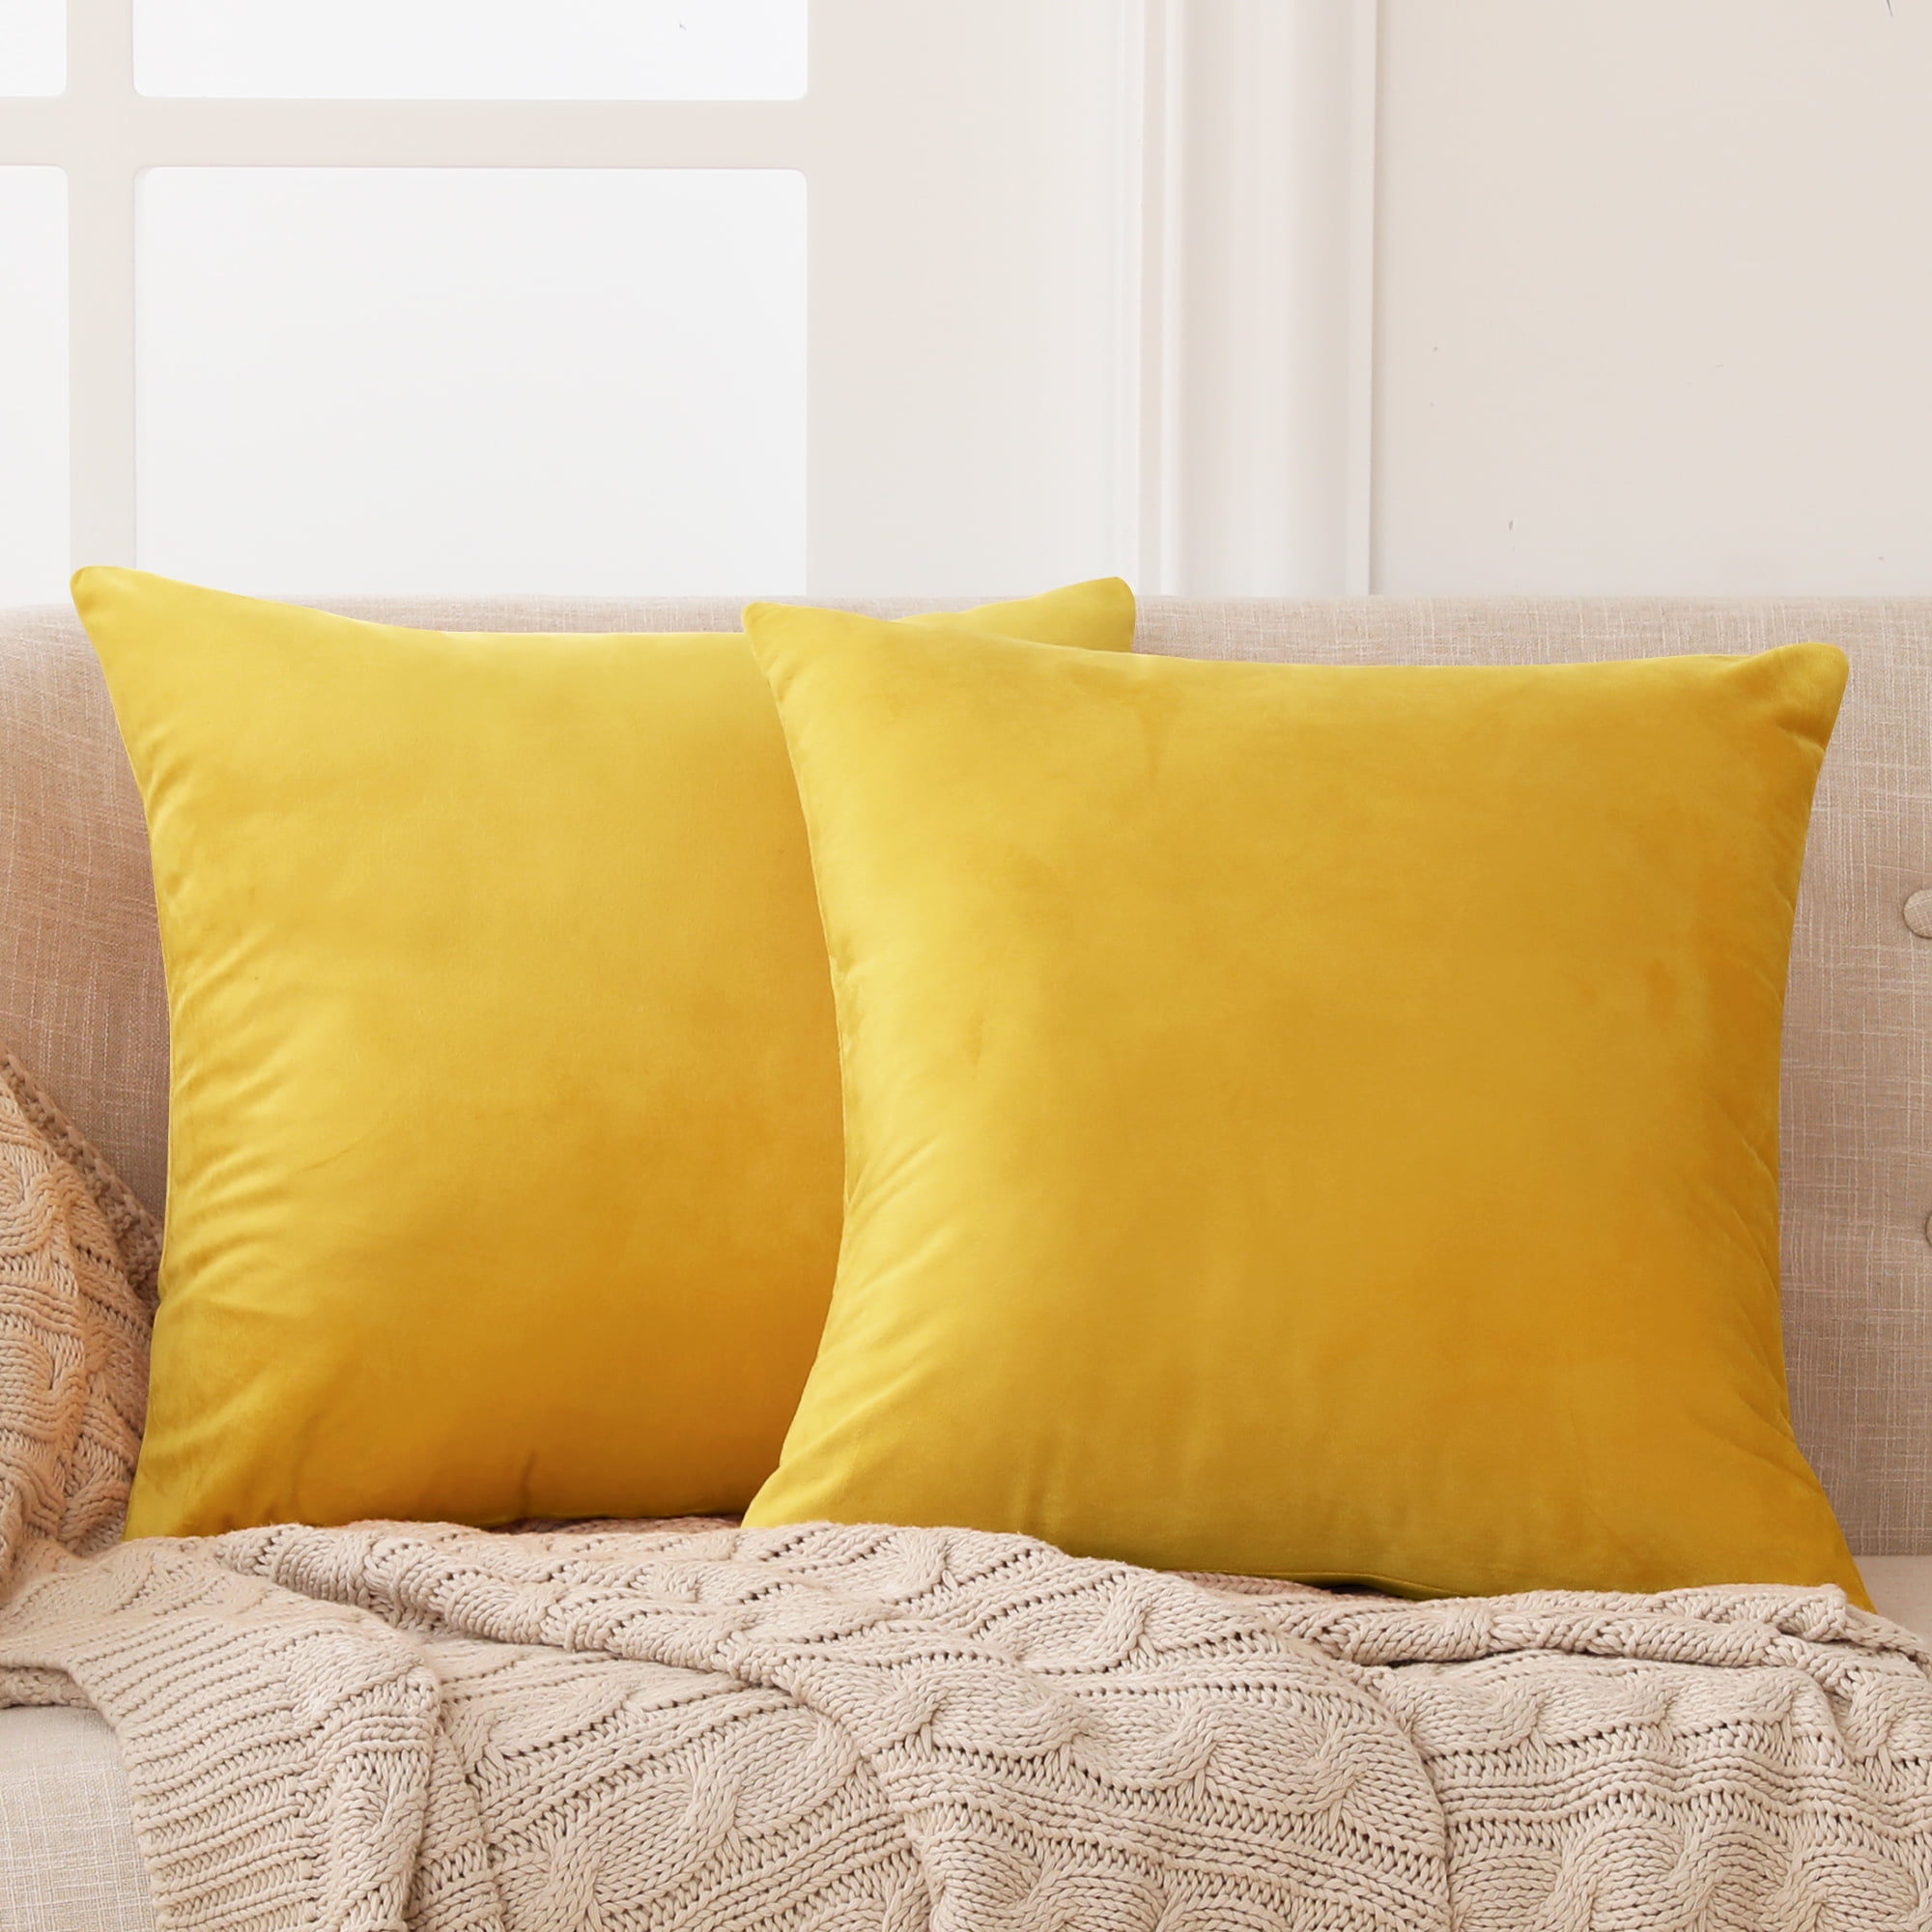 18" Yellow Pillow Case Sofa Car Waist Throw Cushion Cover Pillowcase Home Decor 